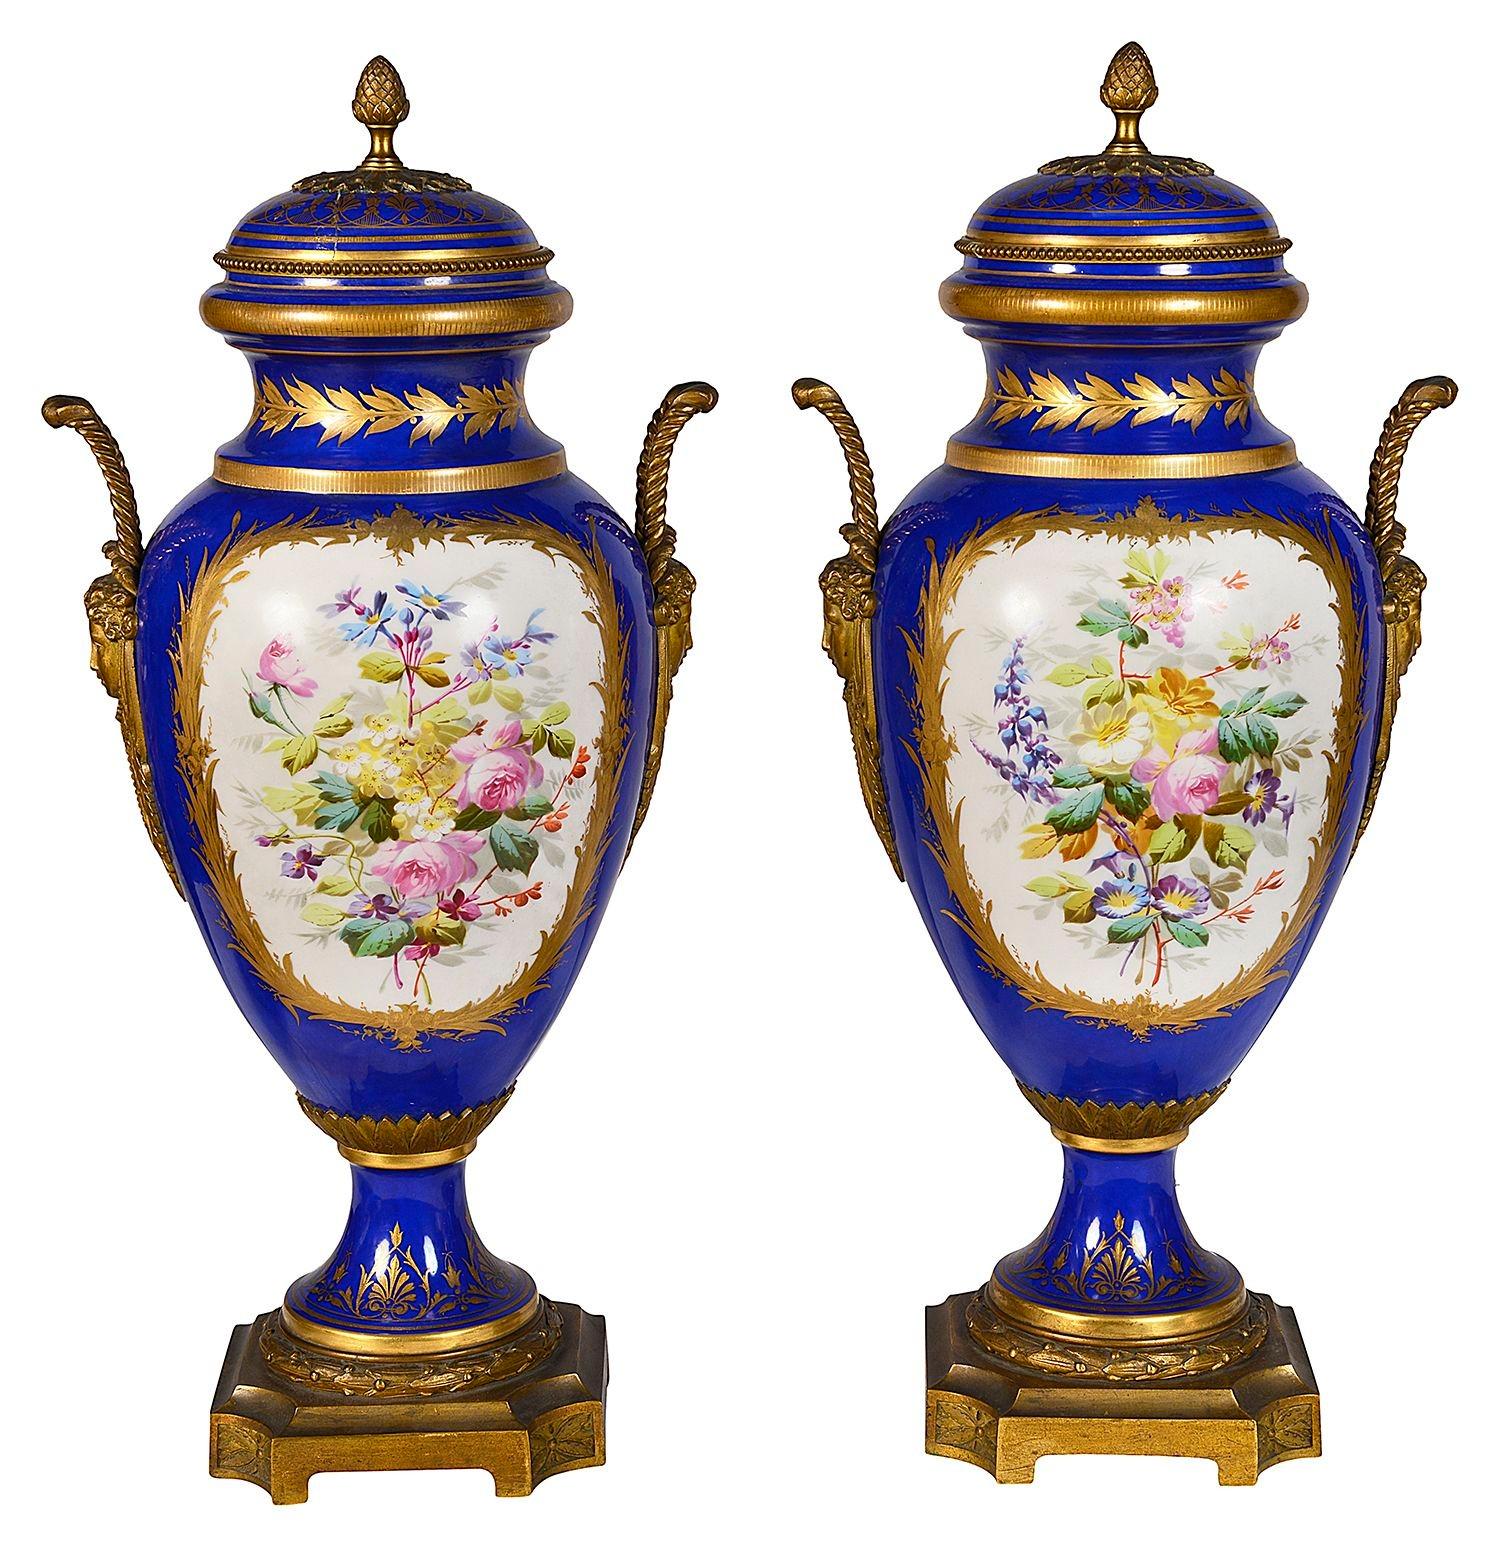 Paire de vases à couvercle en porcelaine de style Sèvres avec montures en bronze doré, chacun avec un fond bleu cobalt, un décor de feuillage doré, des panneaux peints à la main représentant des scènes romantiques et reposant sur des bases